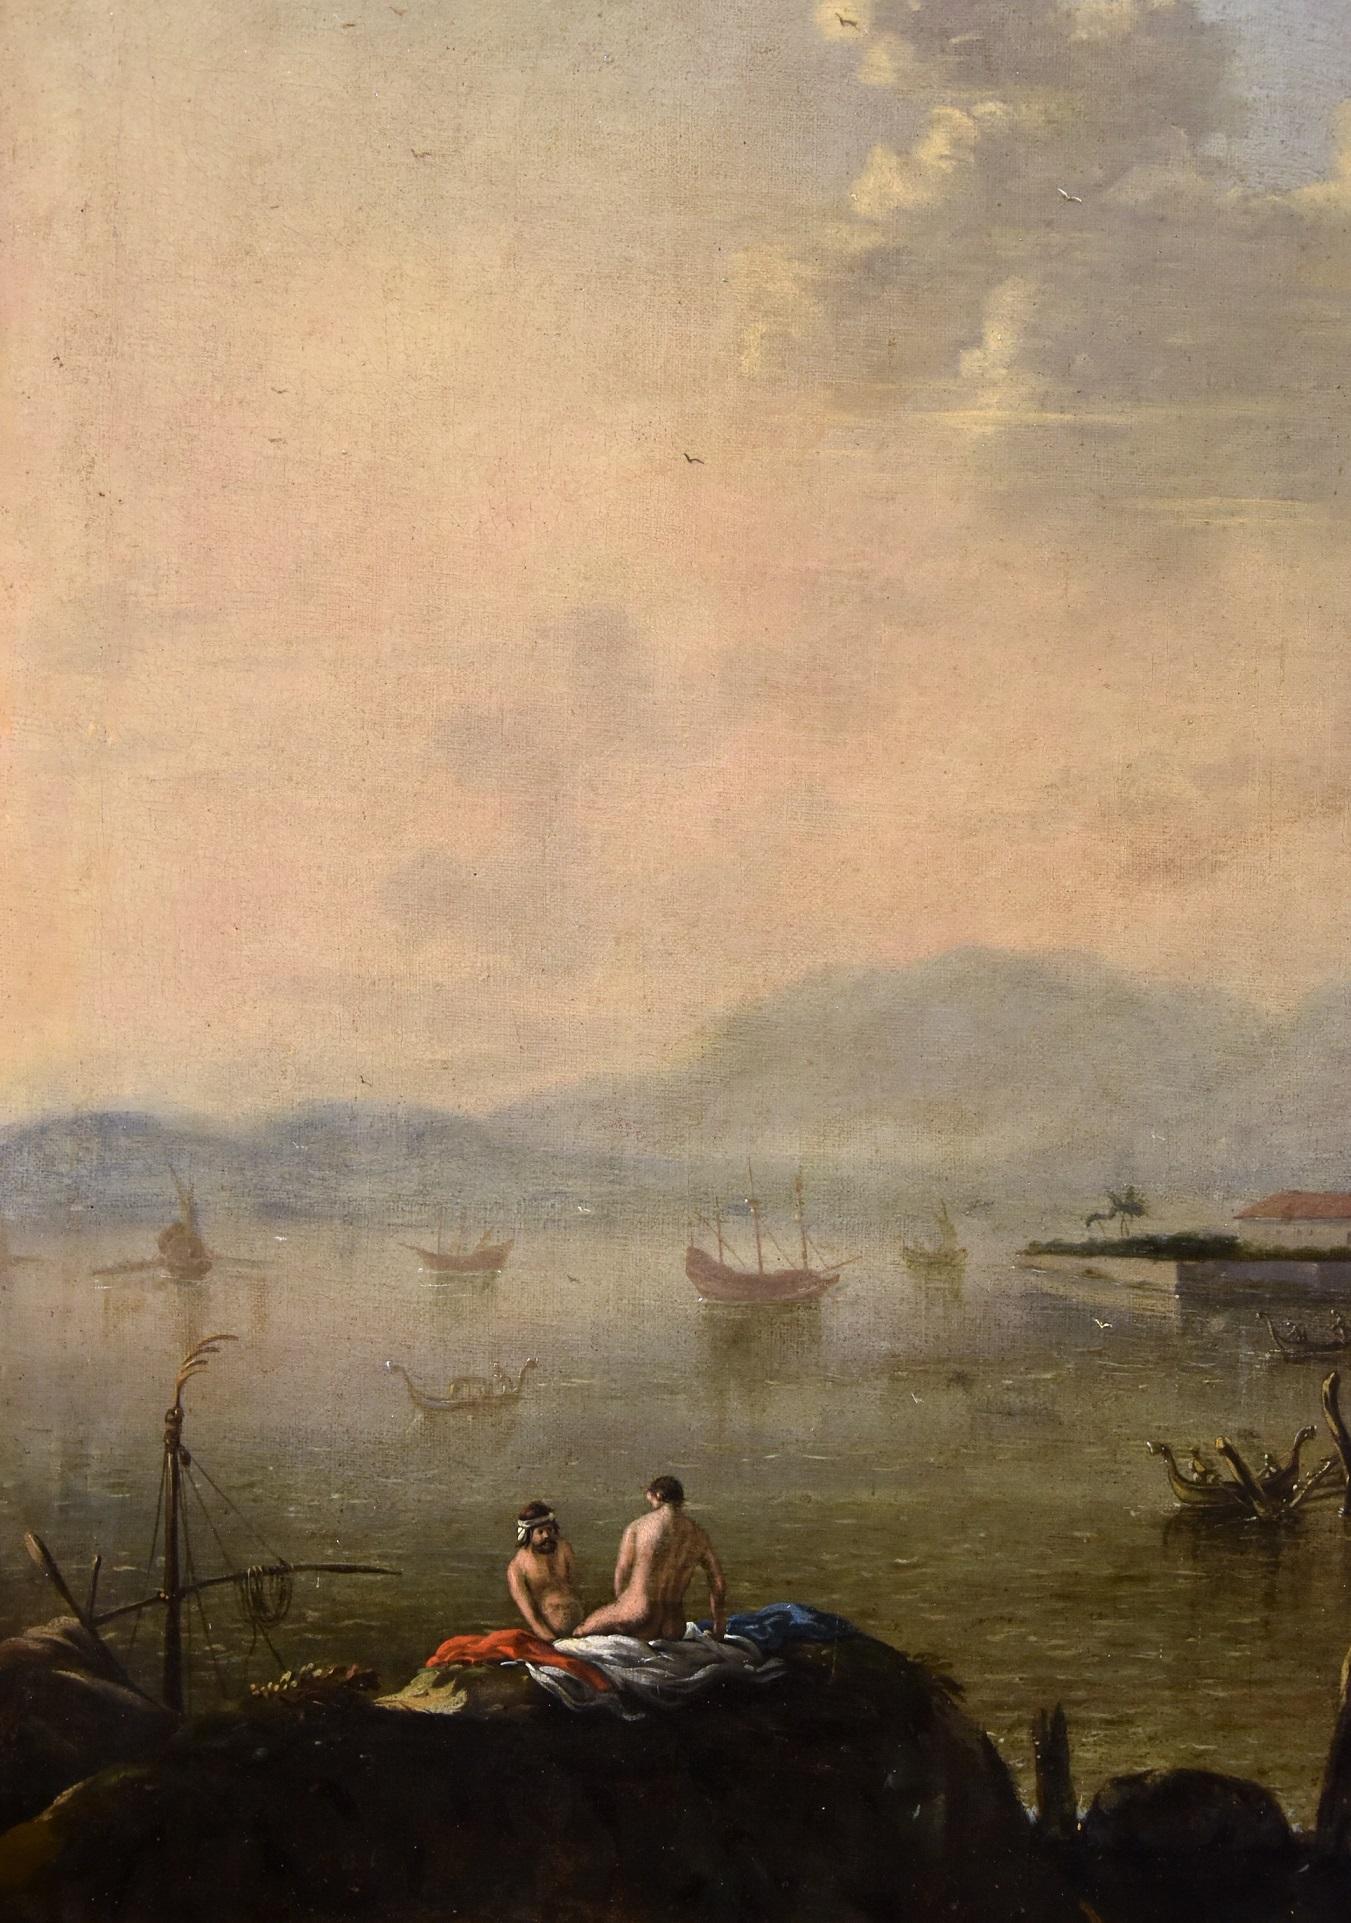 Flämischer Maler, der im achtzehnten Jahrhundert in Italien tätig war
Küstenlandschaft des Mittelmeeres mit Architekturen und Figuren
Ölgemälde auf Leinwand (69 x 88 cm., im Rahmen 80 x 100 cm.)

Die vorgeschlagene Ansicht zeigt eine Küstenansicht